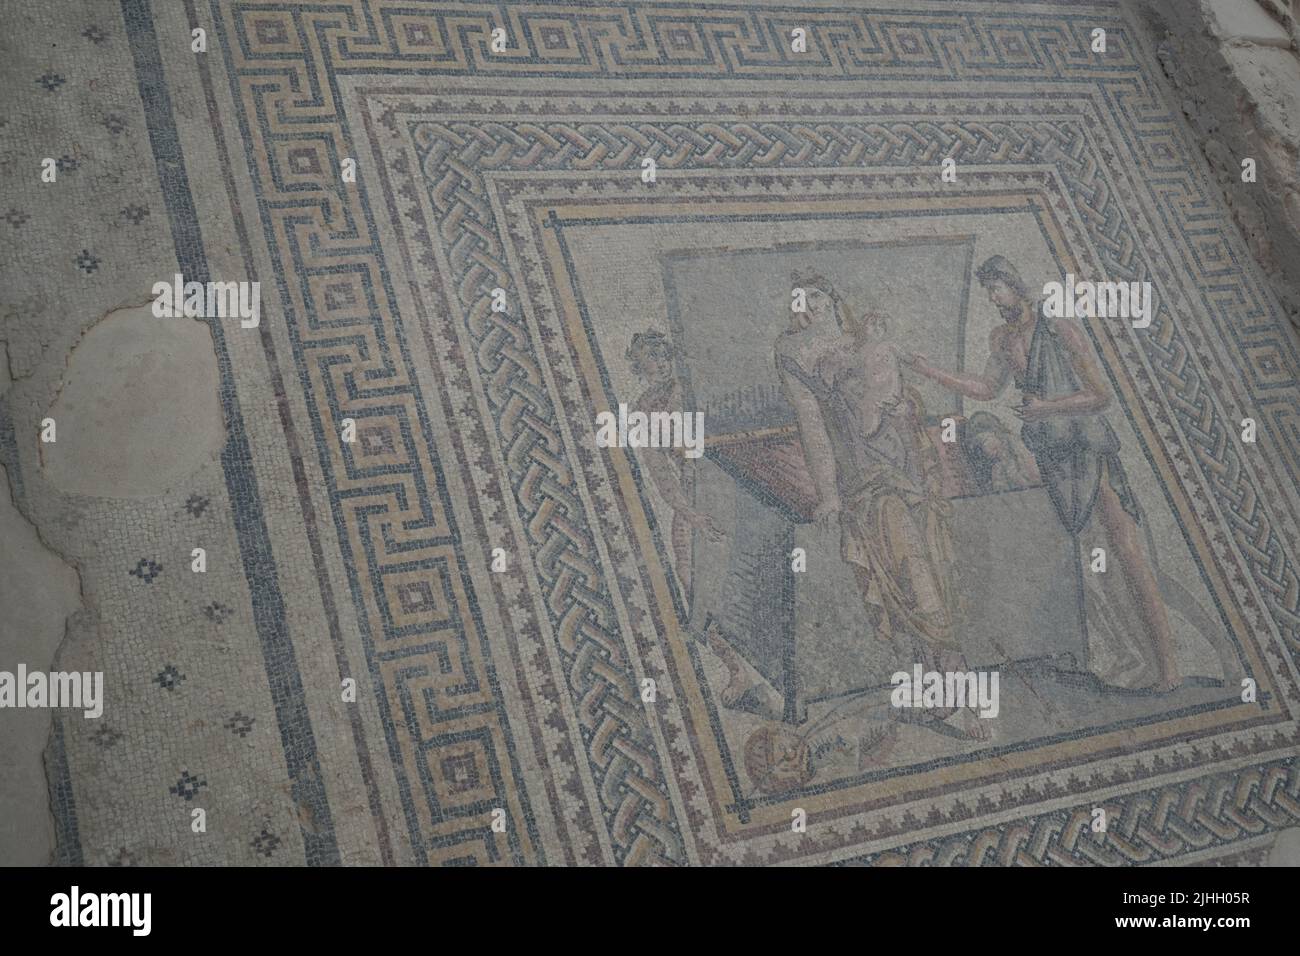 Die Mosaiken in der Stadt Zeugma, die von den Griechen gegründet und später von den Römern vor dem EuPhat fortgesetzt wurden. Weltkulturerbe der Türkei Stockfoto